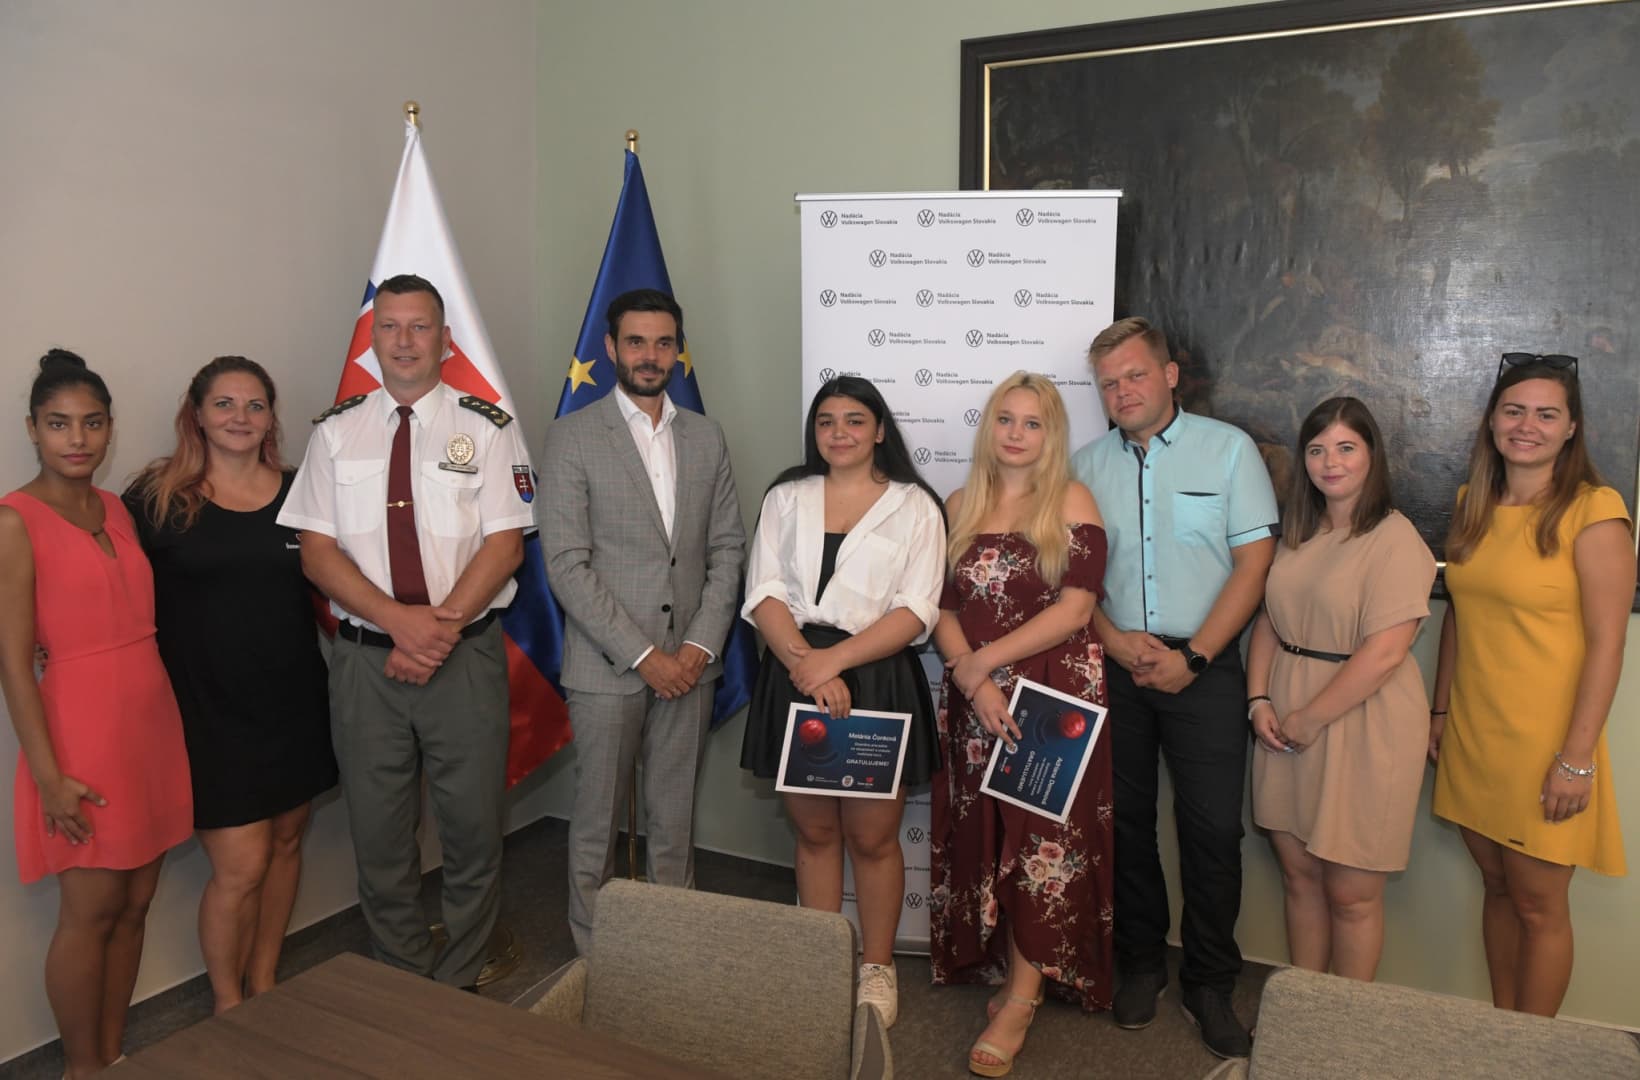 Jogsira kaptak utalványt a szlovák gyermekotthonokból kinőtt fiatalok